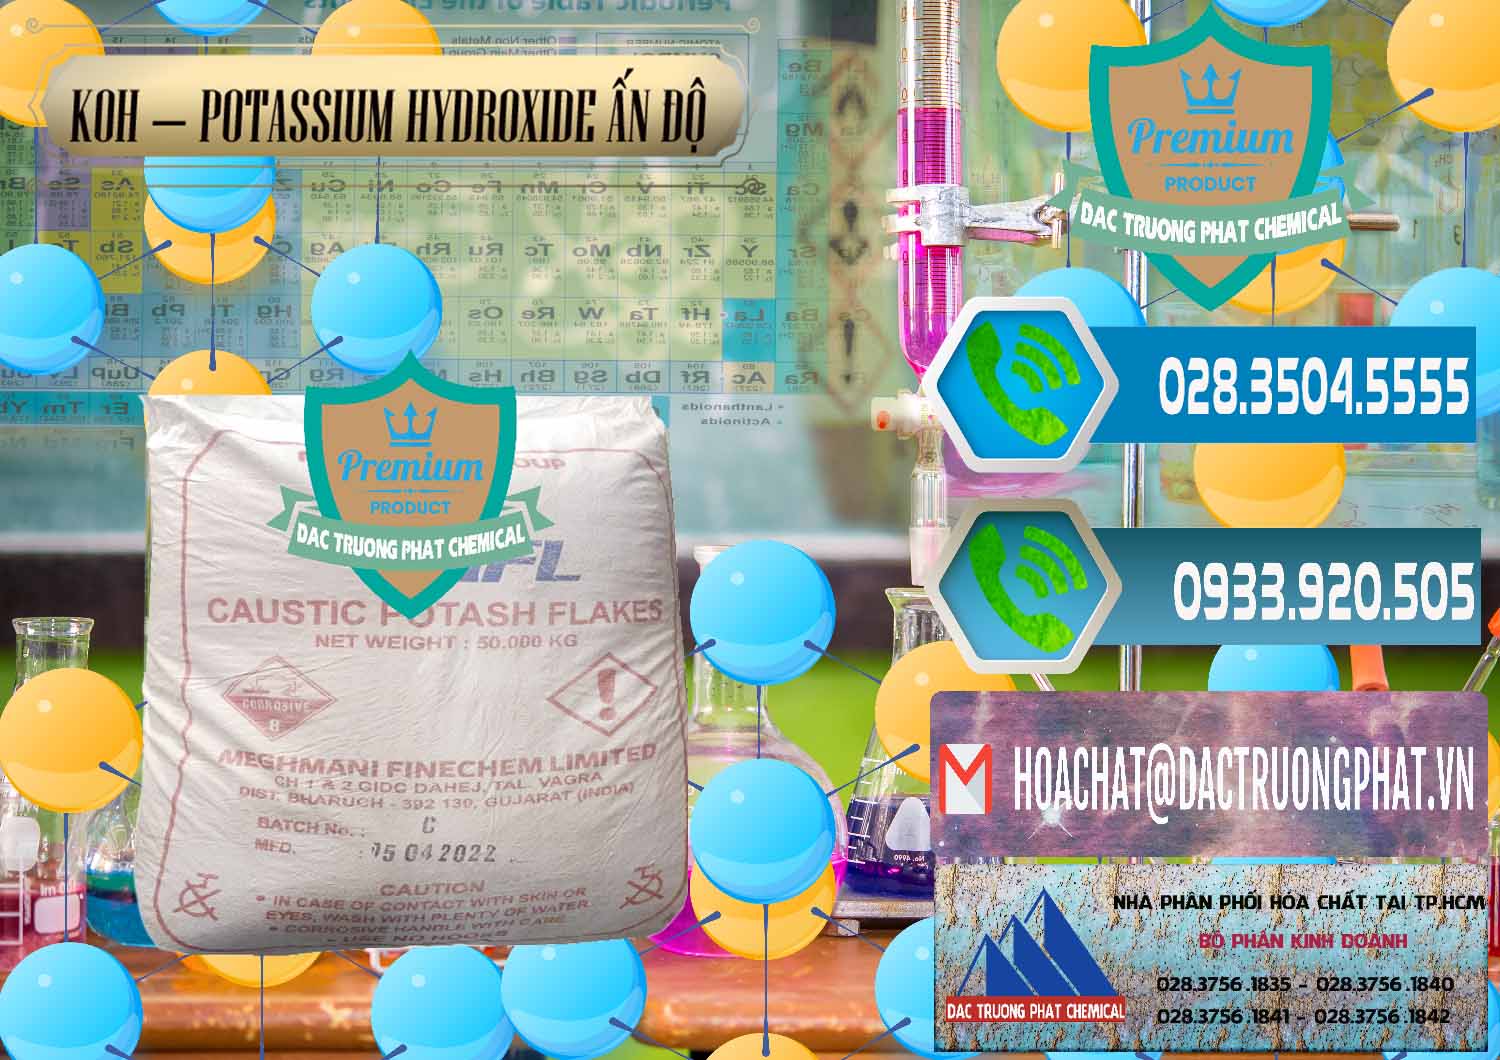 Nơi bán - phân phối KOH ( 90%) – Potassium Hydroxide Ấn Độ India - 0352 - Cty chuyên bán & phân phối hóa chất tại TP.HCM - congtyhoachat.net